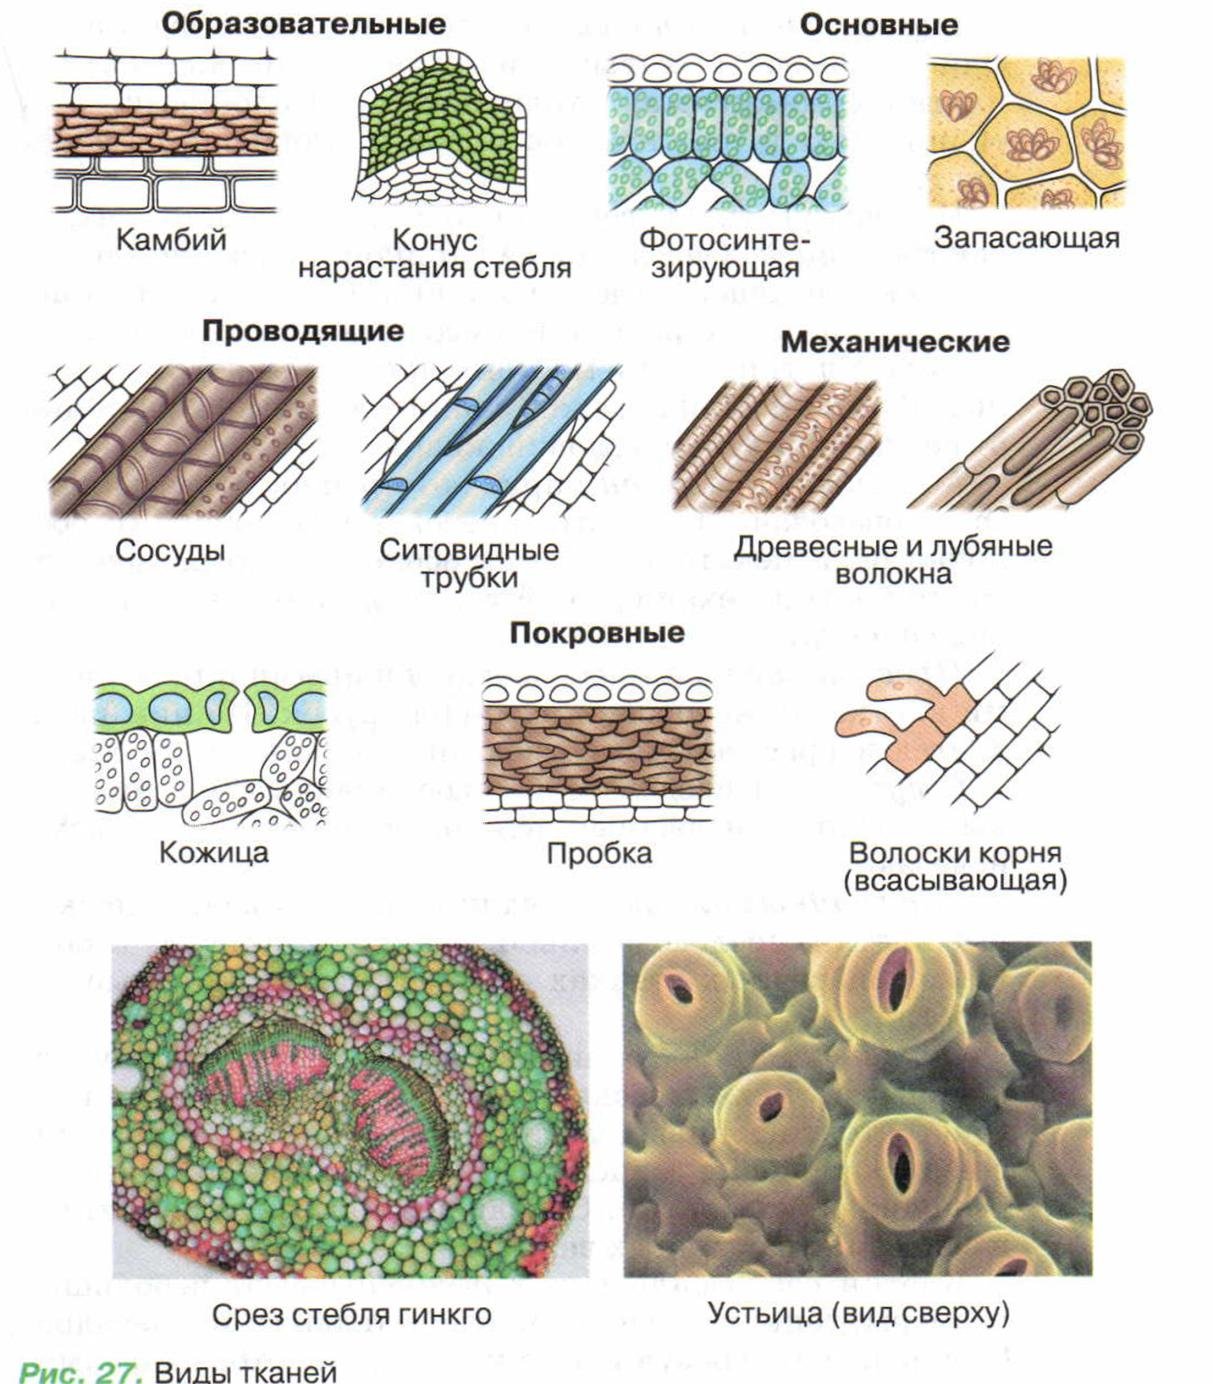 Какие ткани имеются в растениях. Строение растительных тканей 6 класс биология. Клеточное строение основной ткани растений. Схема растительной ткани биология. Типы тканей растений и их функции.